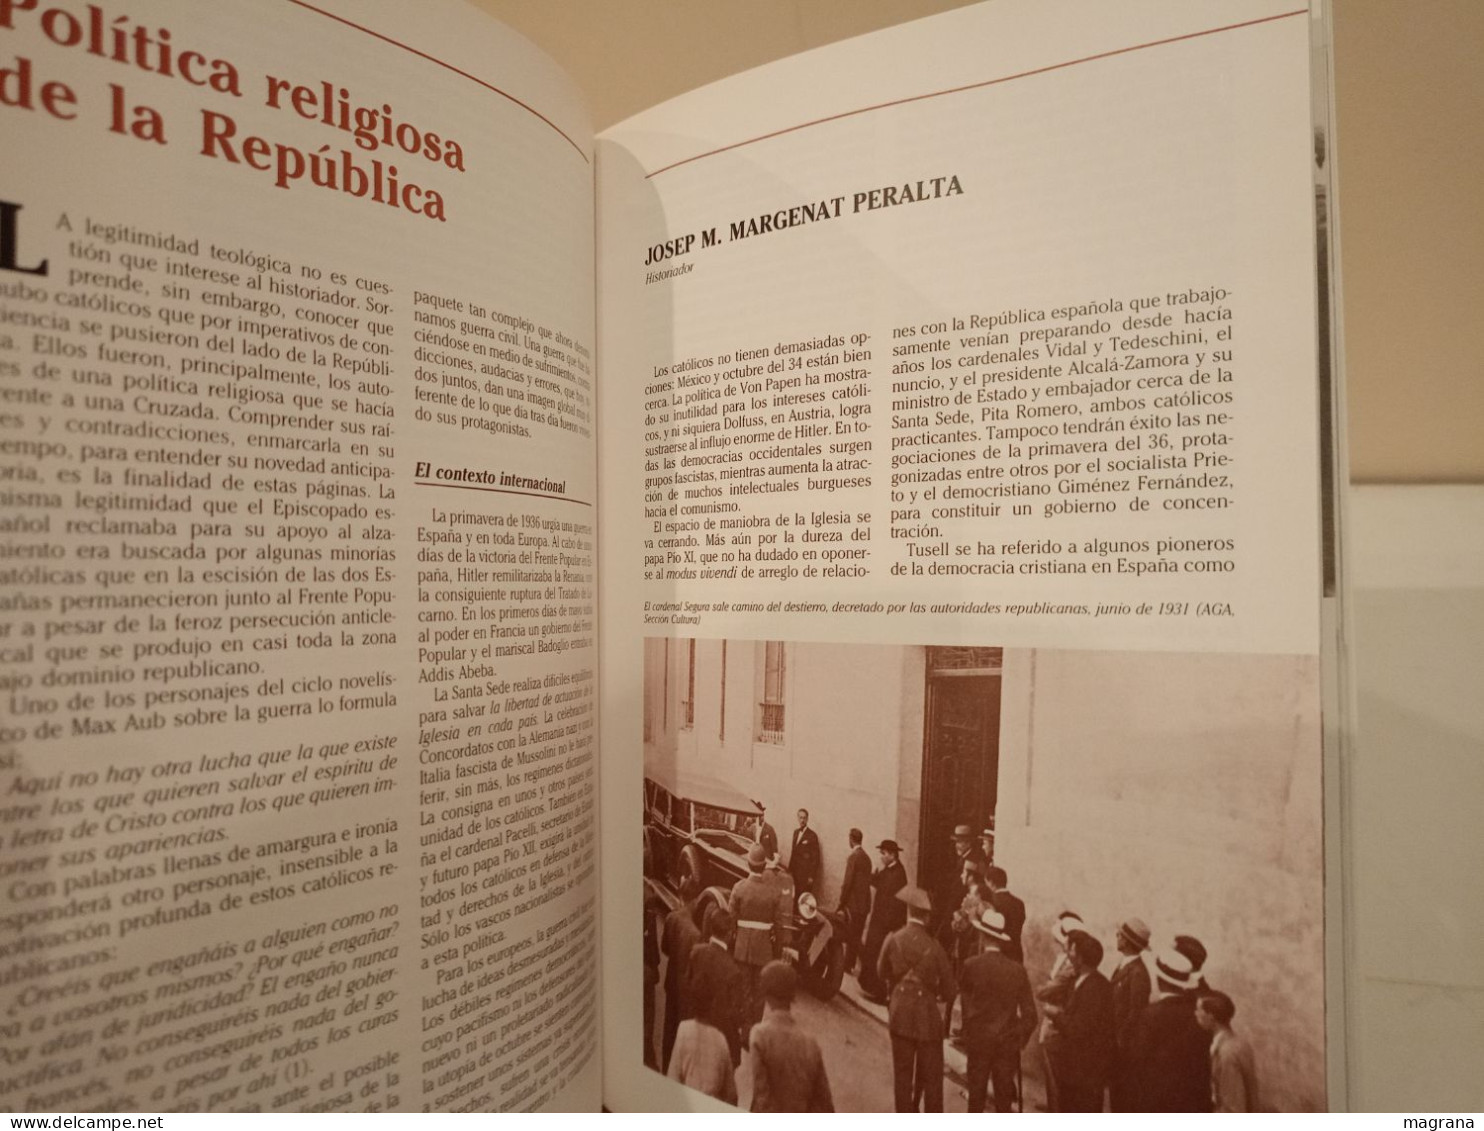 La Guerra Civil Española. 13- La Iglesia durante la Guerra. Ediciones Folio. 1996. 118 páginas.